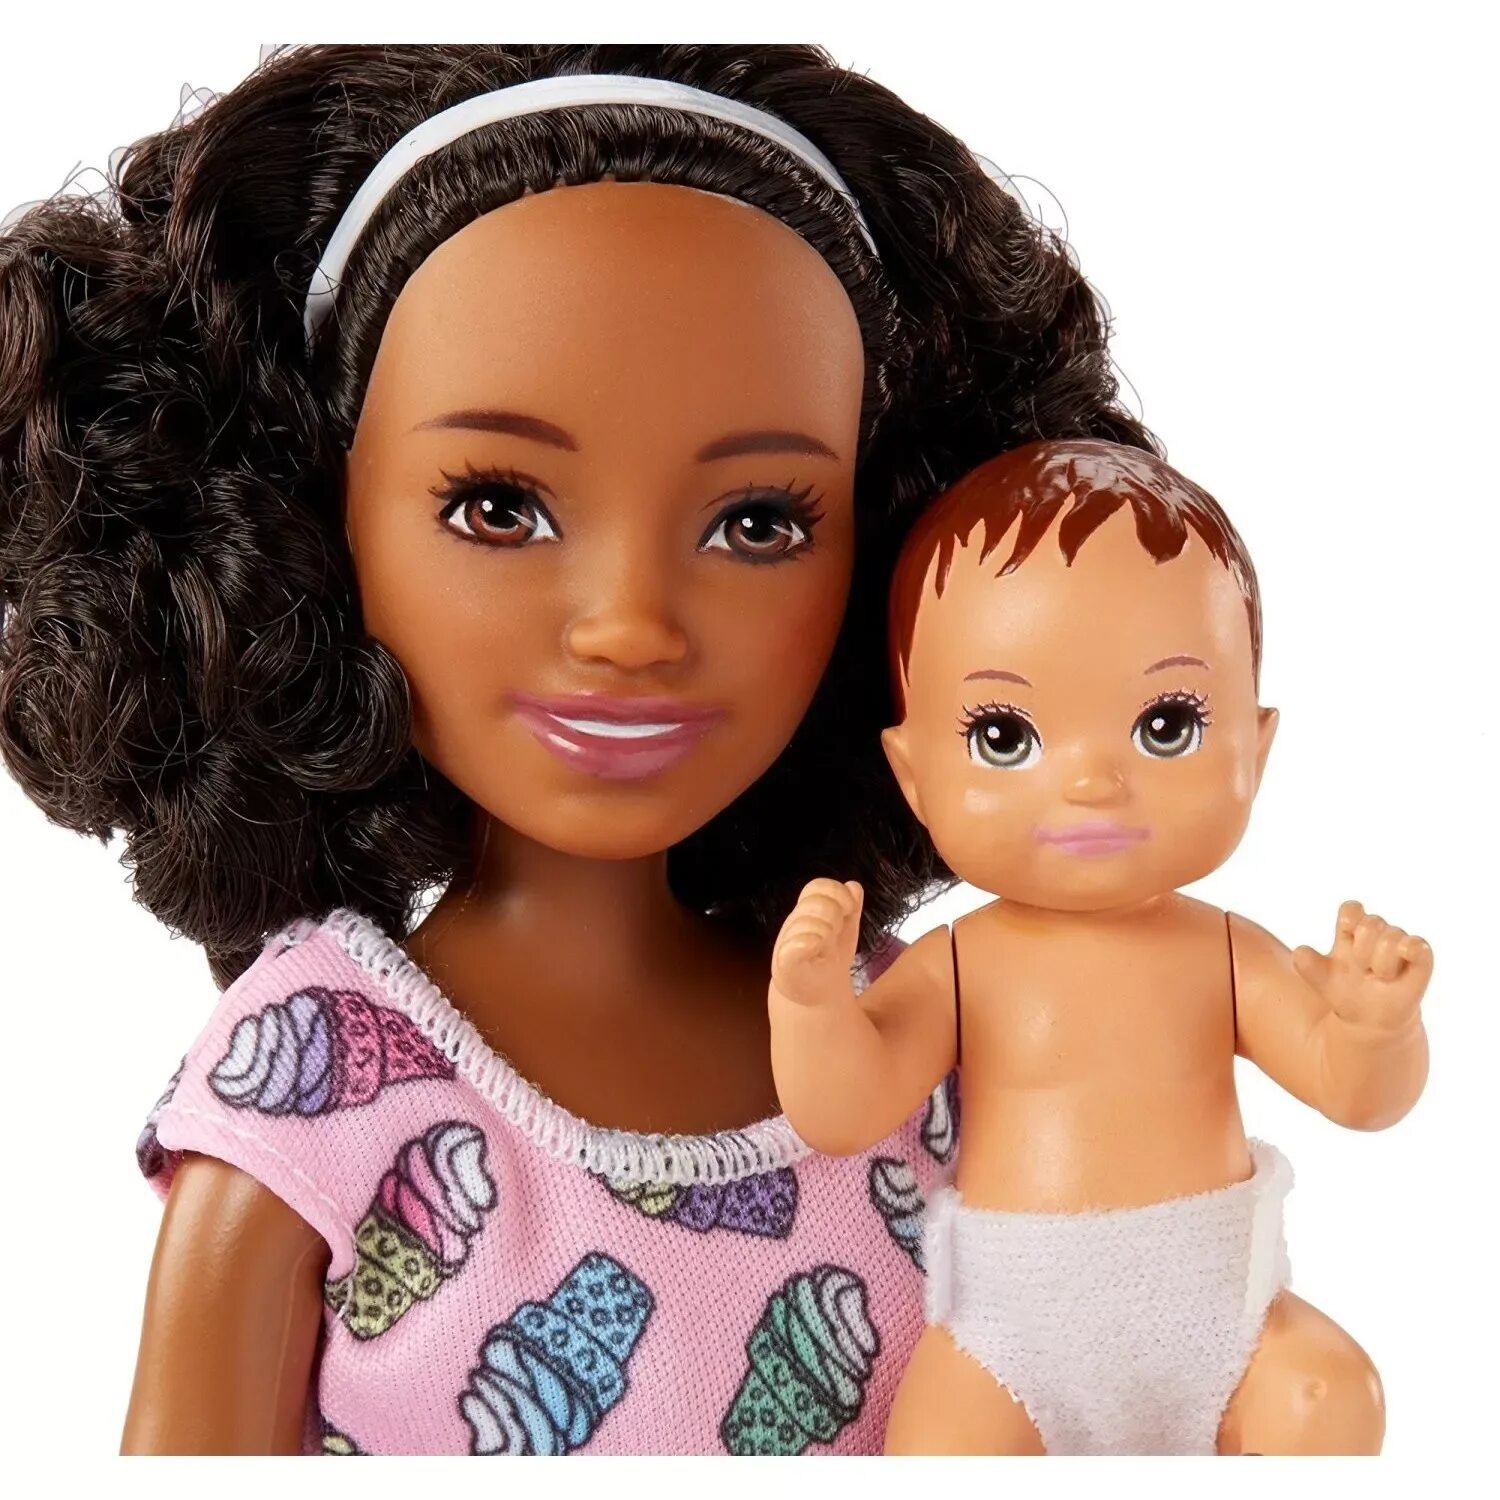 Темнокожая кукла. Игровой набор Barbie fhy97/fhy99 няня babysitters. Кукла Барби няня Скиппер. Пупсы Barbie Skipper babysitter. Skipper няня Barbie малыш.